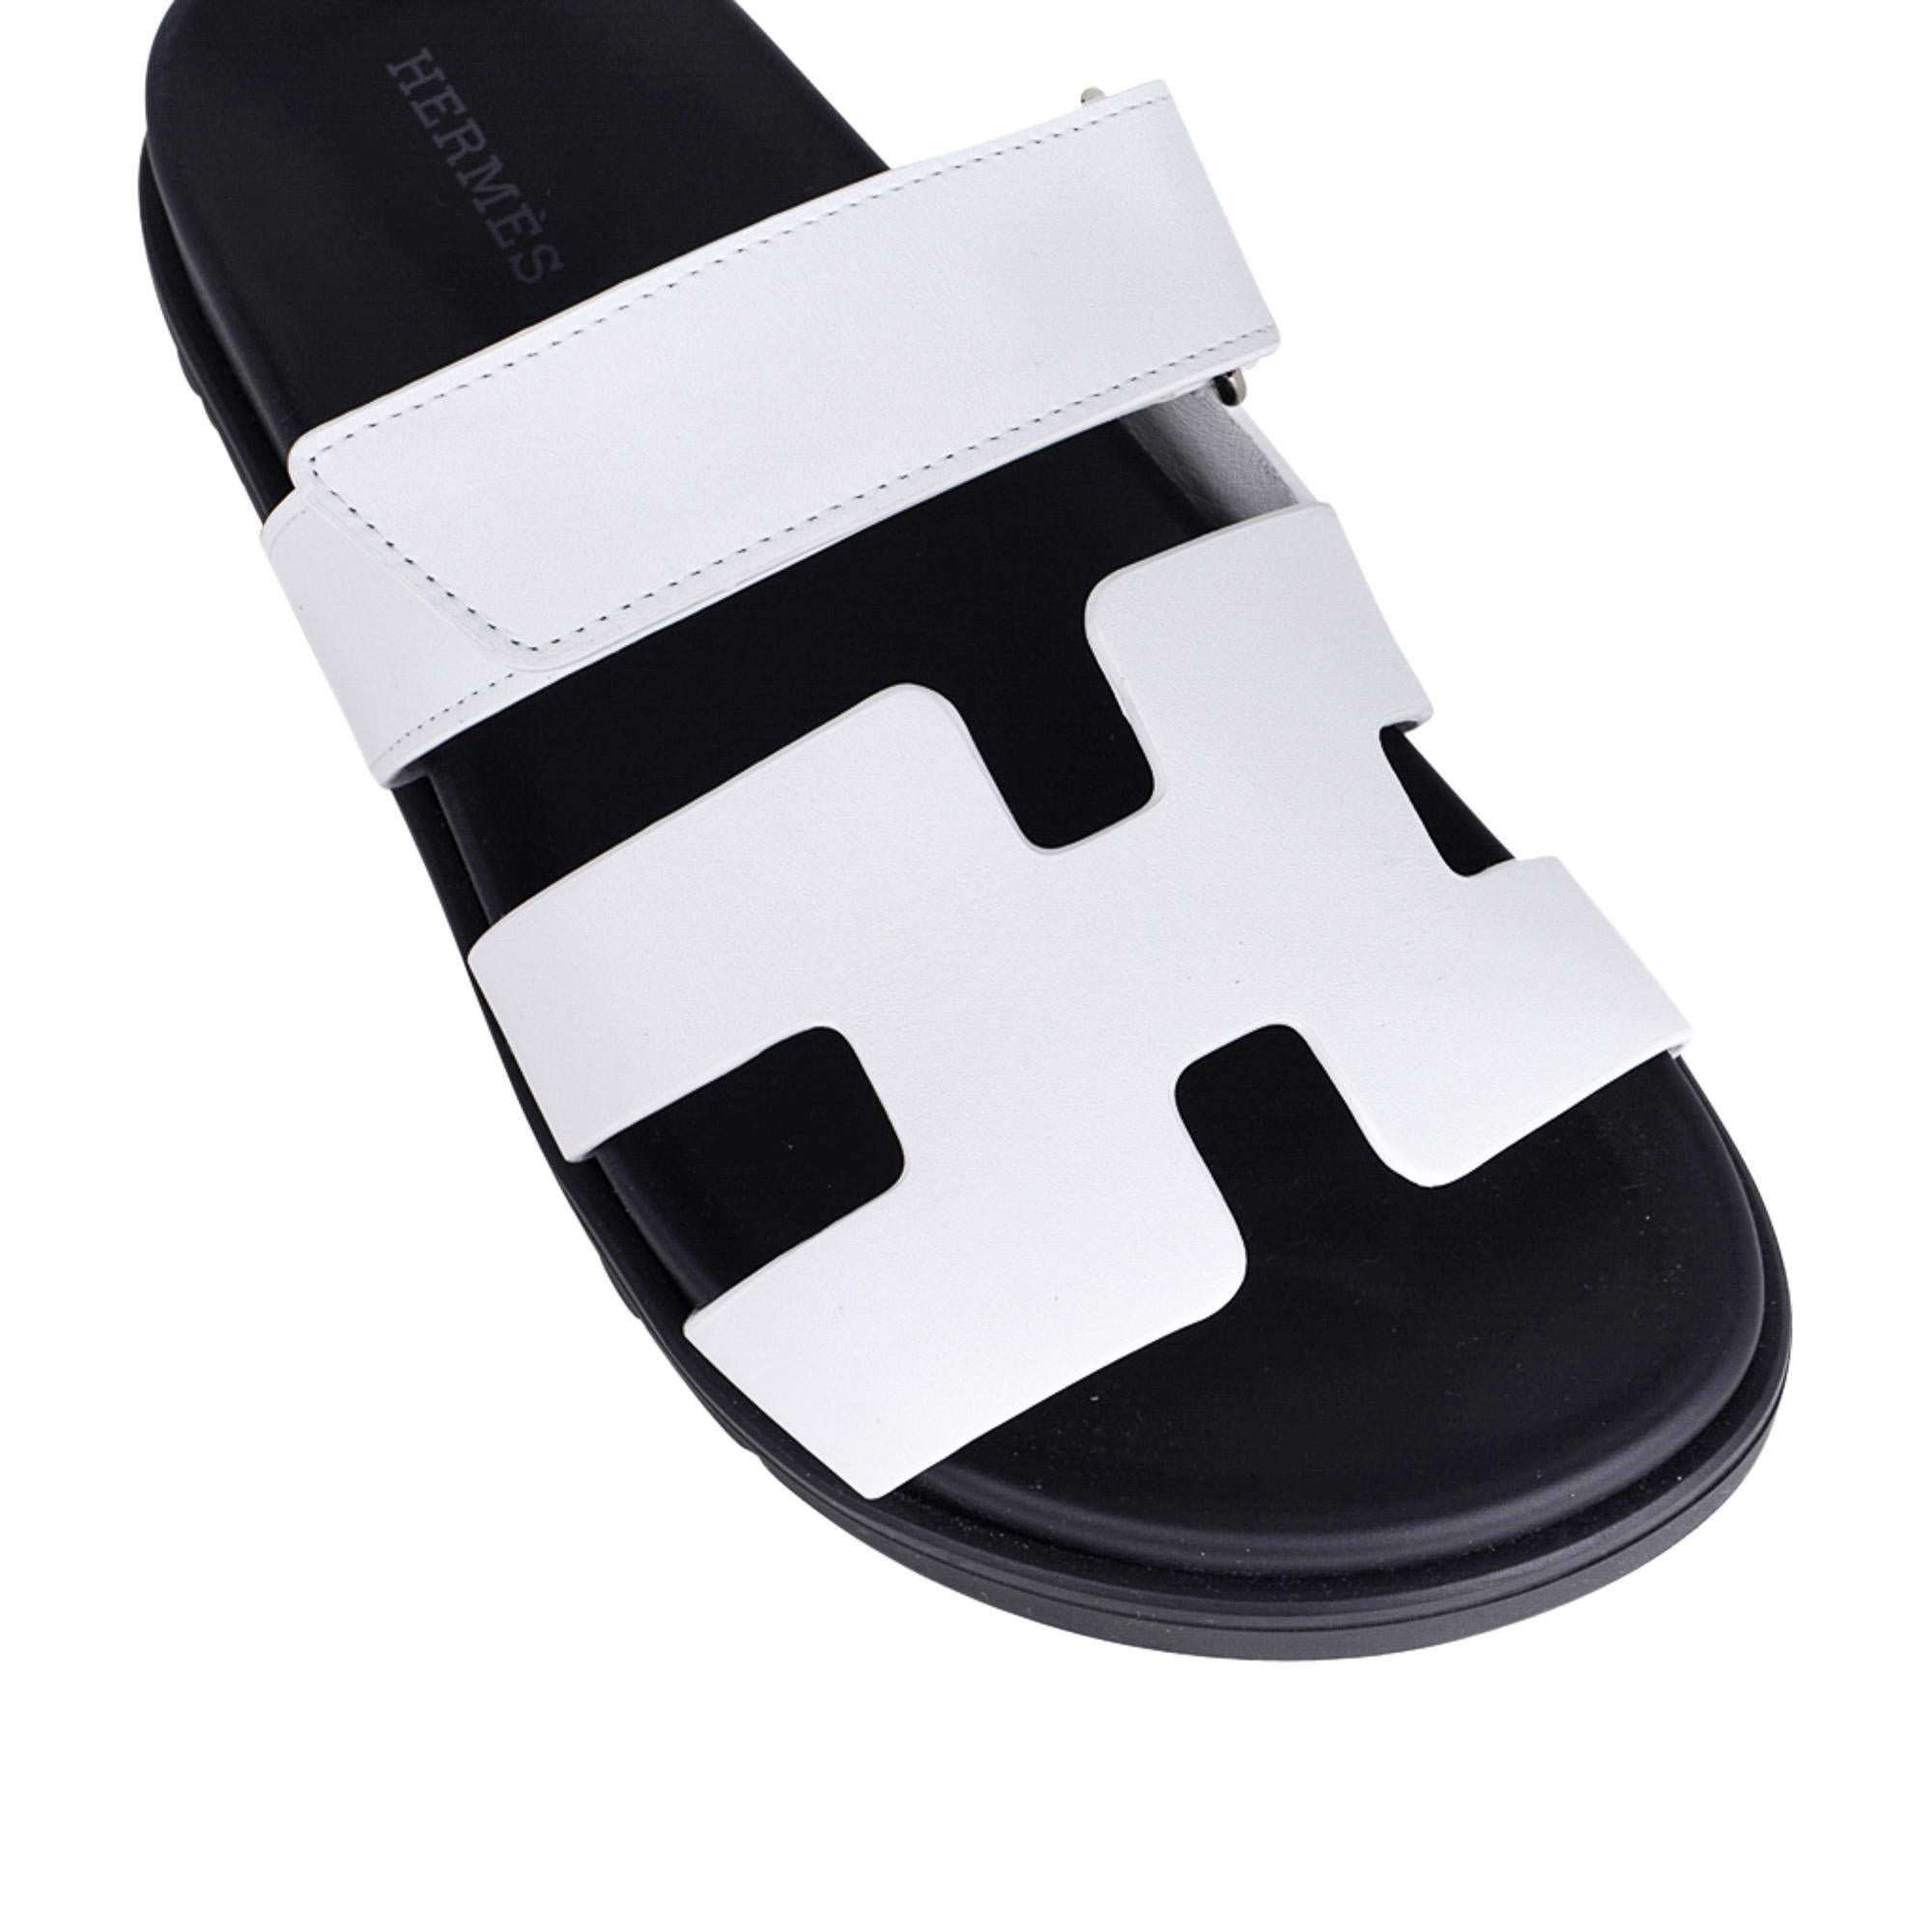 Mightychic bietet eine limitierte Auflage der Hermes Chypre Sandale in der Farbe Weiß an.
Kalbsleder mit schwarzer anatomischer Innensohle und schwarzer Gummisohle mit H-Prägung.
Der Riemen über dem Fuß ist mit einem Klettverschluss